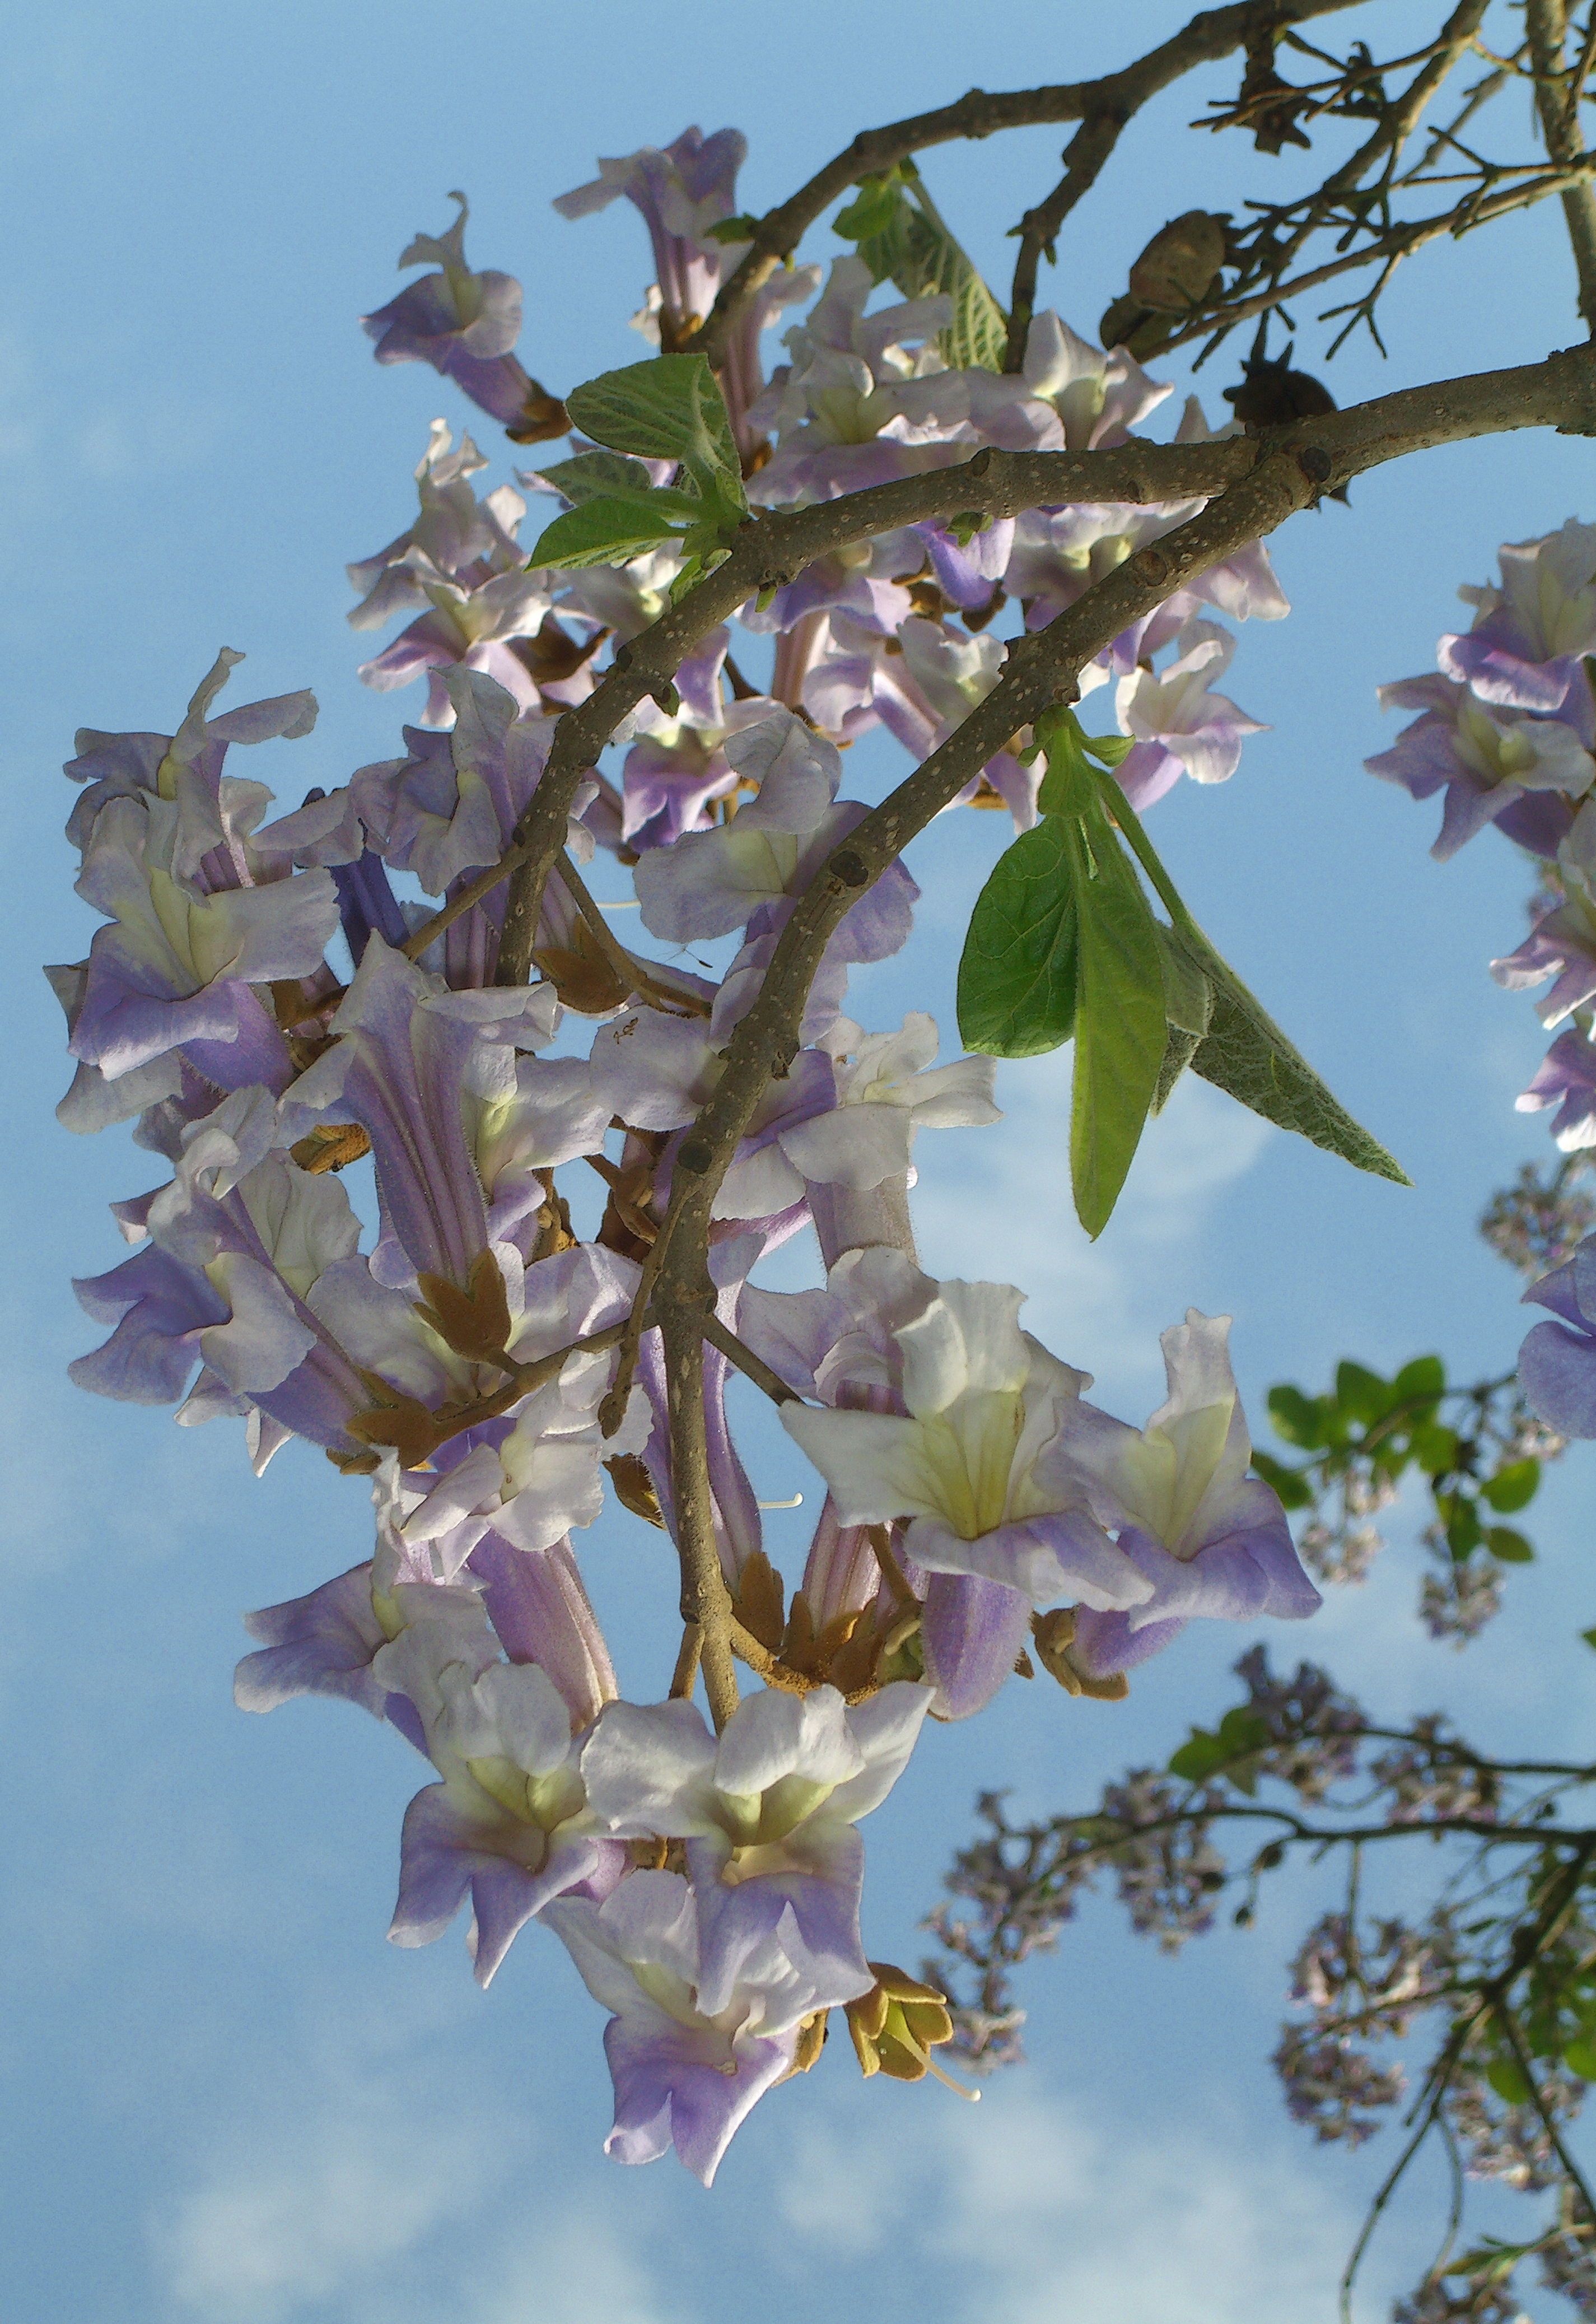 Seedeo® Blauglockenbaum (Paulownia tomentosa) Jungpflanze